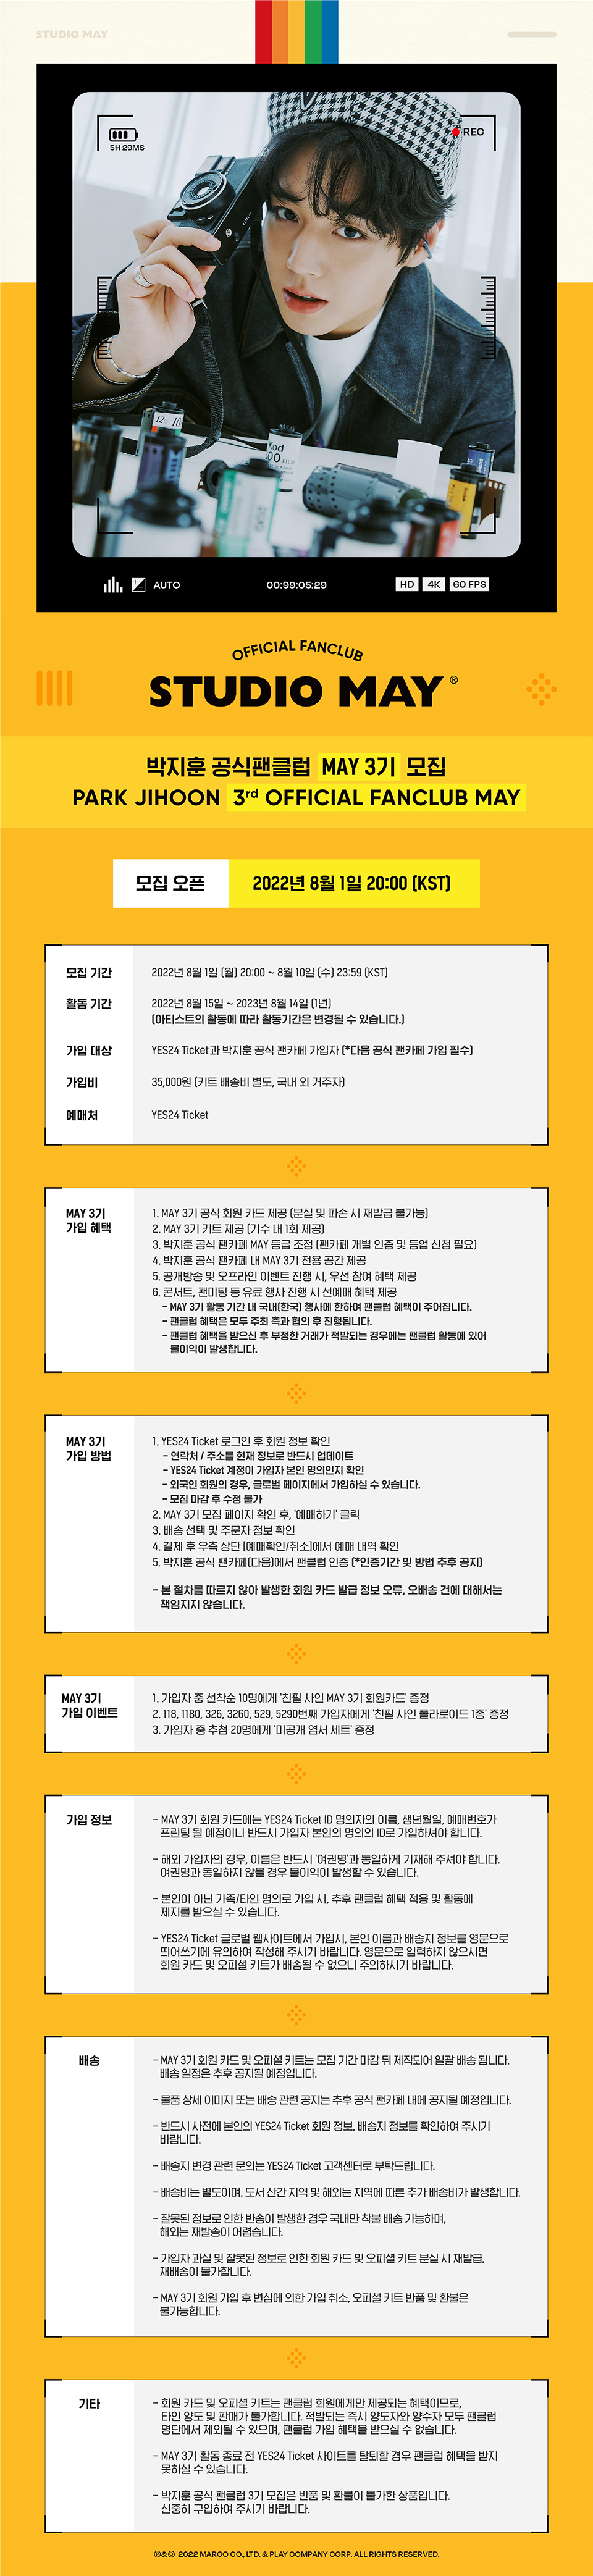 [정보/소식] 🐰박지훈 3rd 공식팬클럽 [STUDIOMAY] 모집안내🐰 | 인스티즈